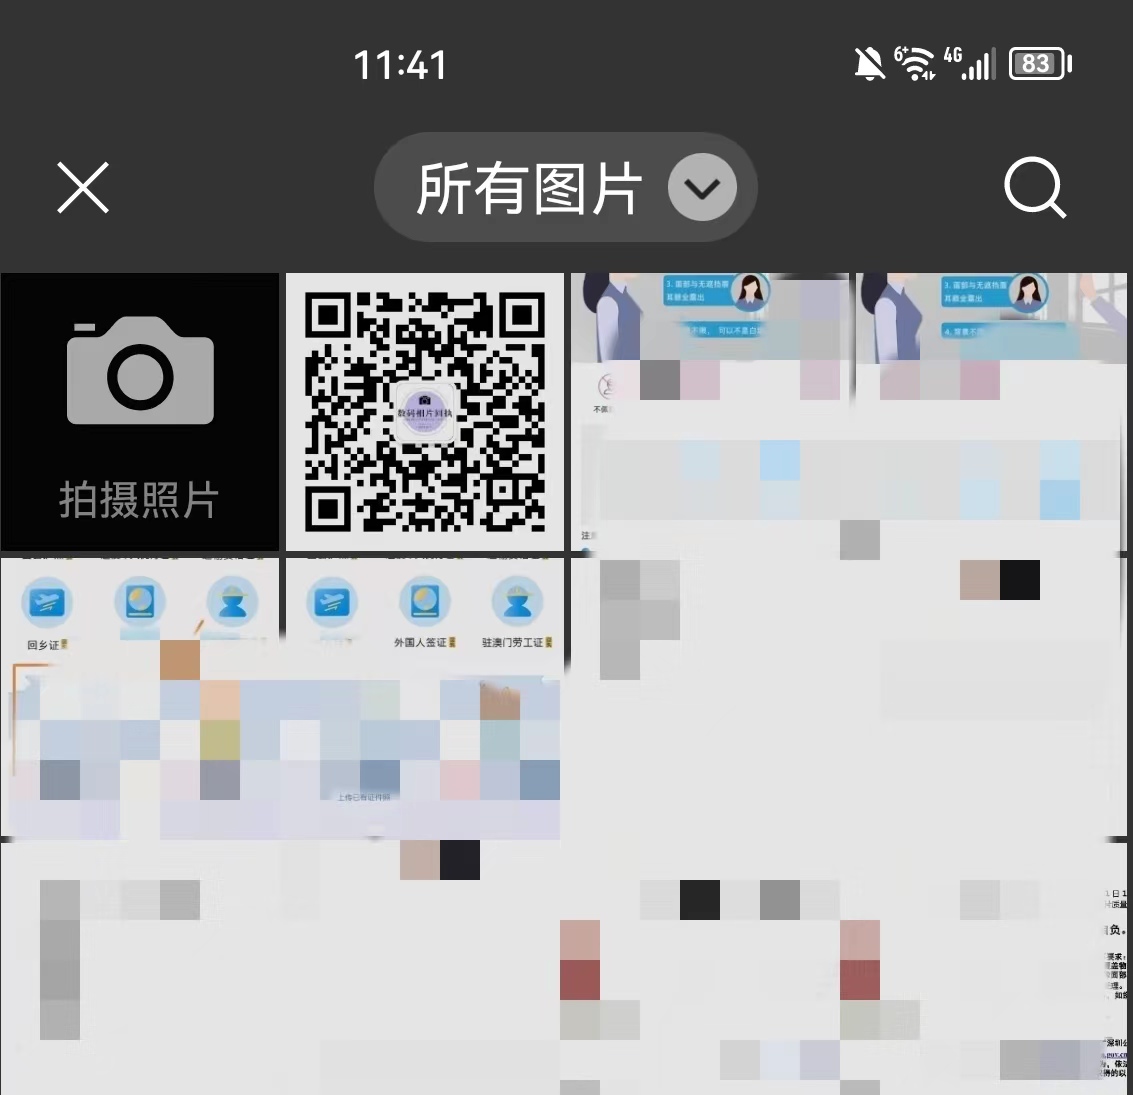 深圳身份证照片要求什么底色